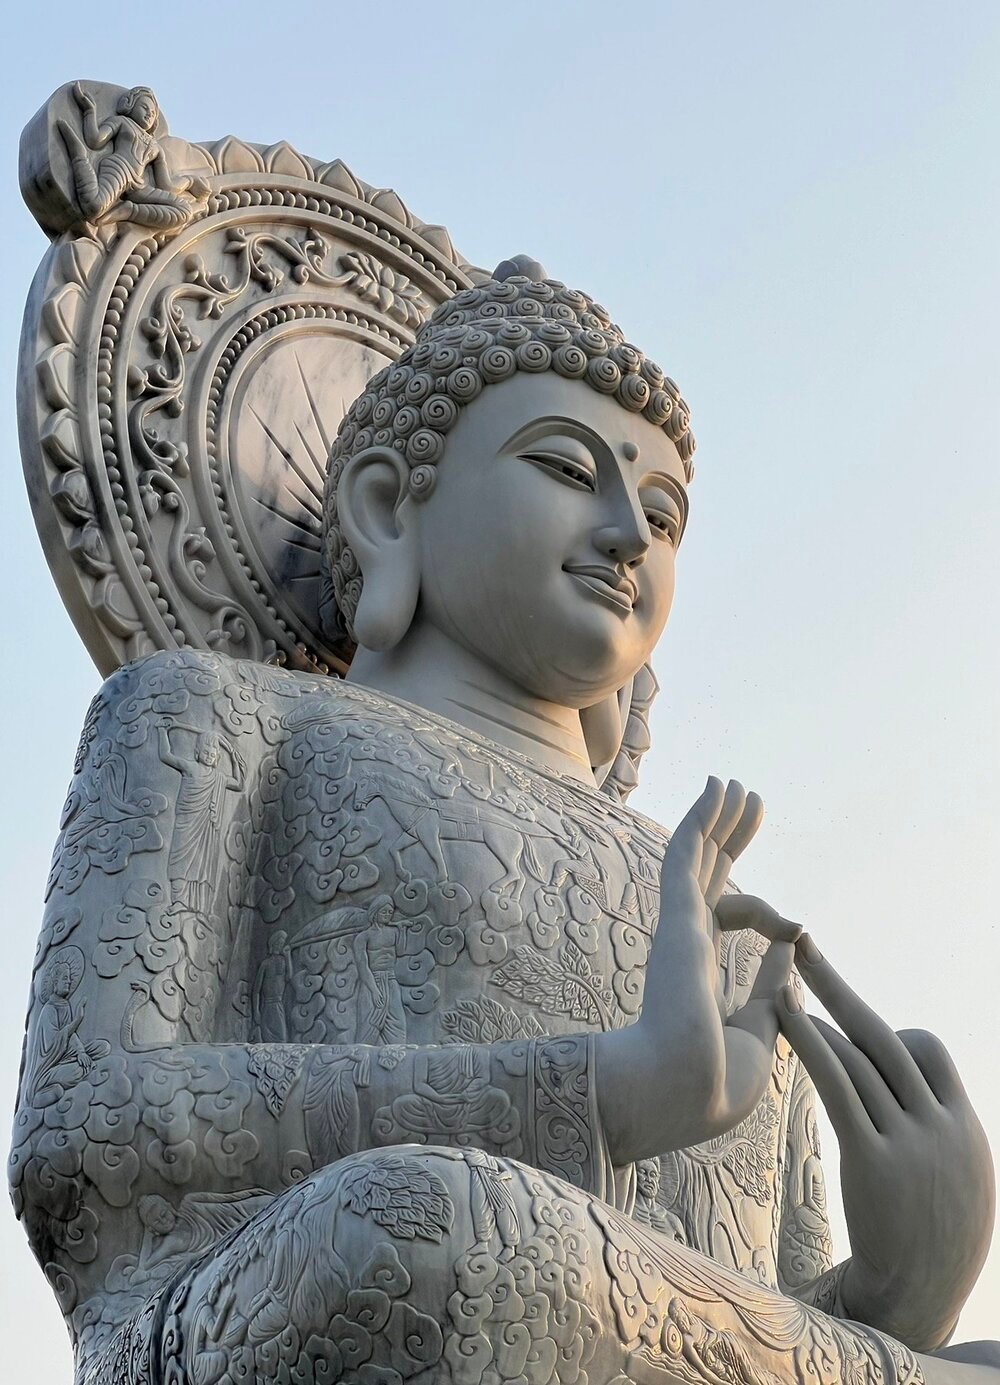 Đại Tượng Phật Thích Ca kết ấn chuyển Pháp luân được chế tác theo nghệ thuật điêu khắc truyền thống Newari dòng họ Thích Ca